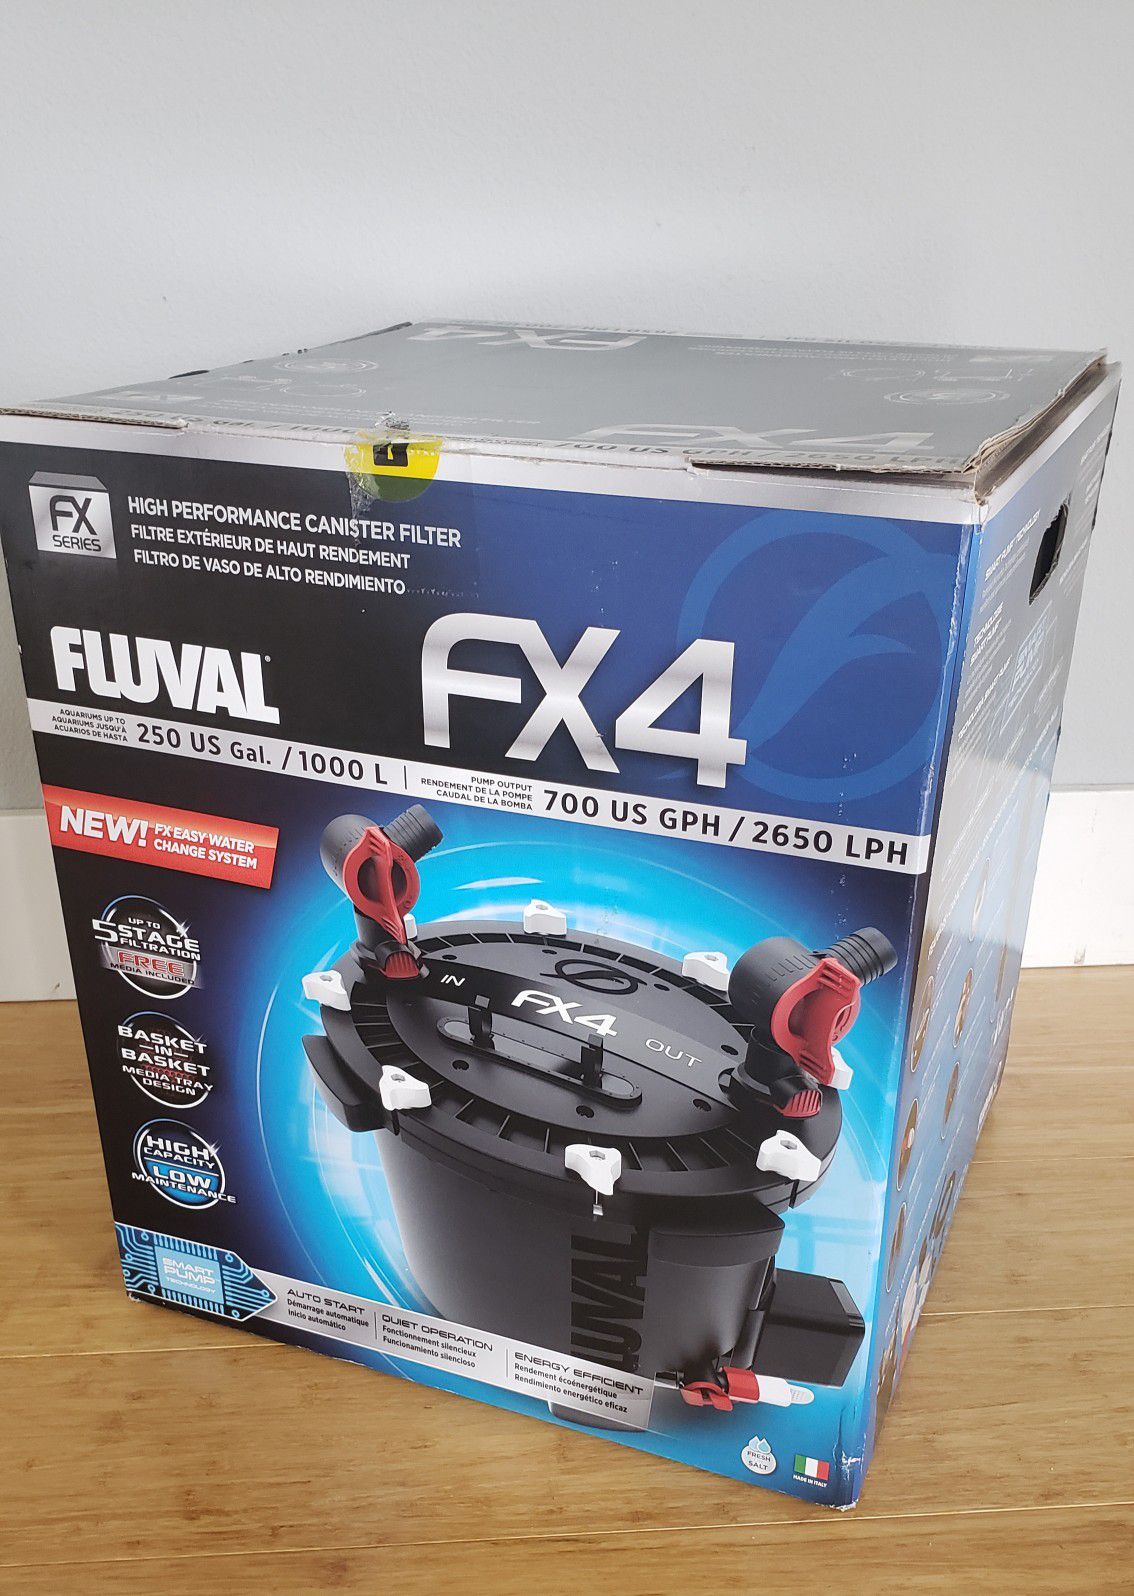 Fluval FX4 aquarium filter NIB